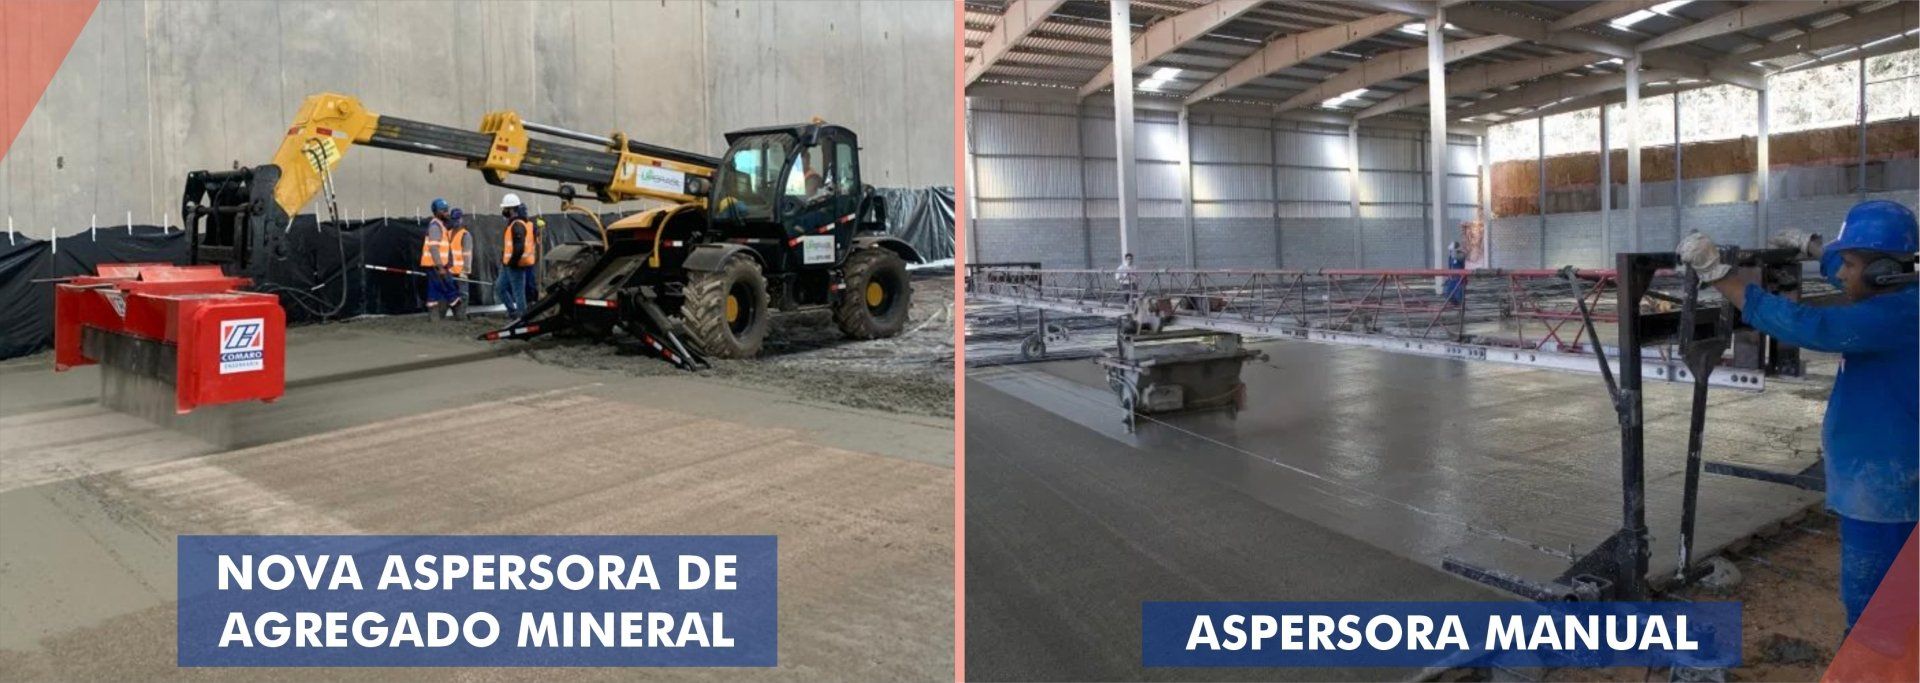 Piso industrial, pavimento de concreto e Revestimento de alto desempenho.